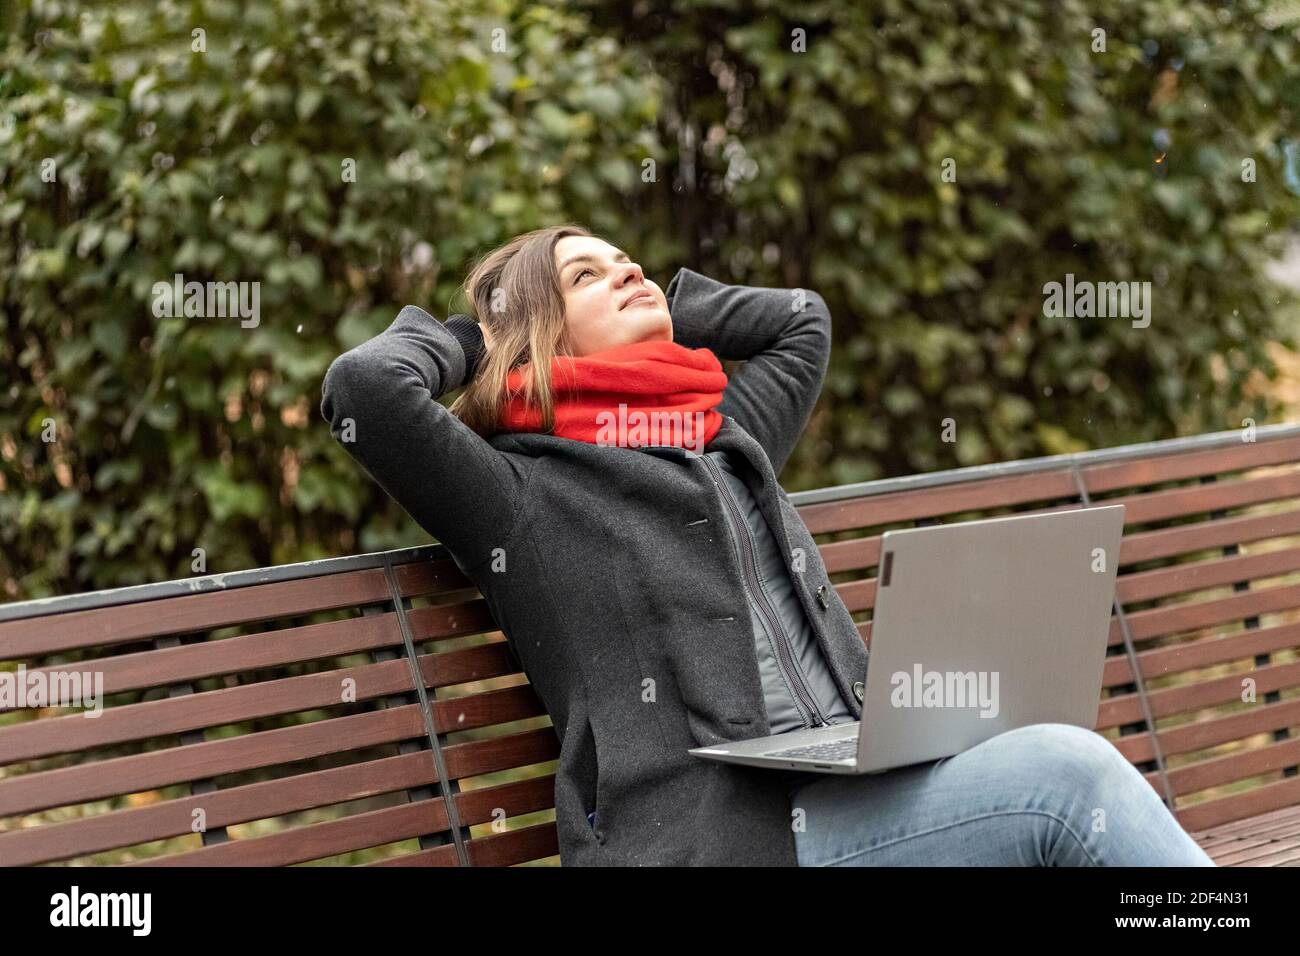 Eine junge Frau, mit den Händen hinter dem Kopf, fühlt Ruhe, ruht nach der Arbeit, sitzt auf einer Holzbank im Park ein Laptop auf den Knien. Pause während w Stockfoto